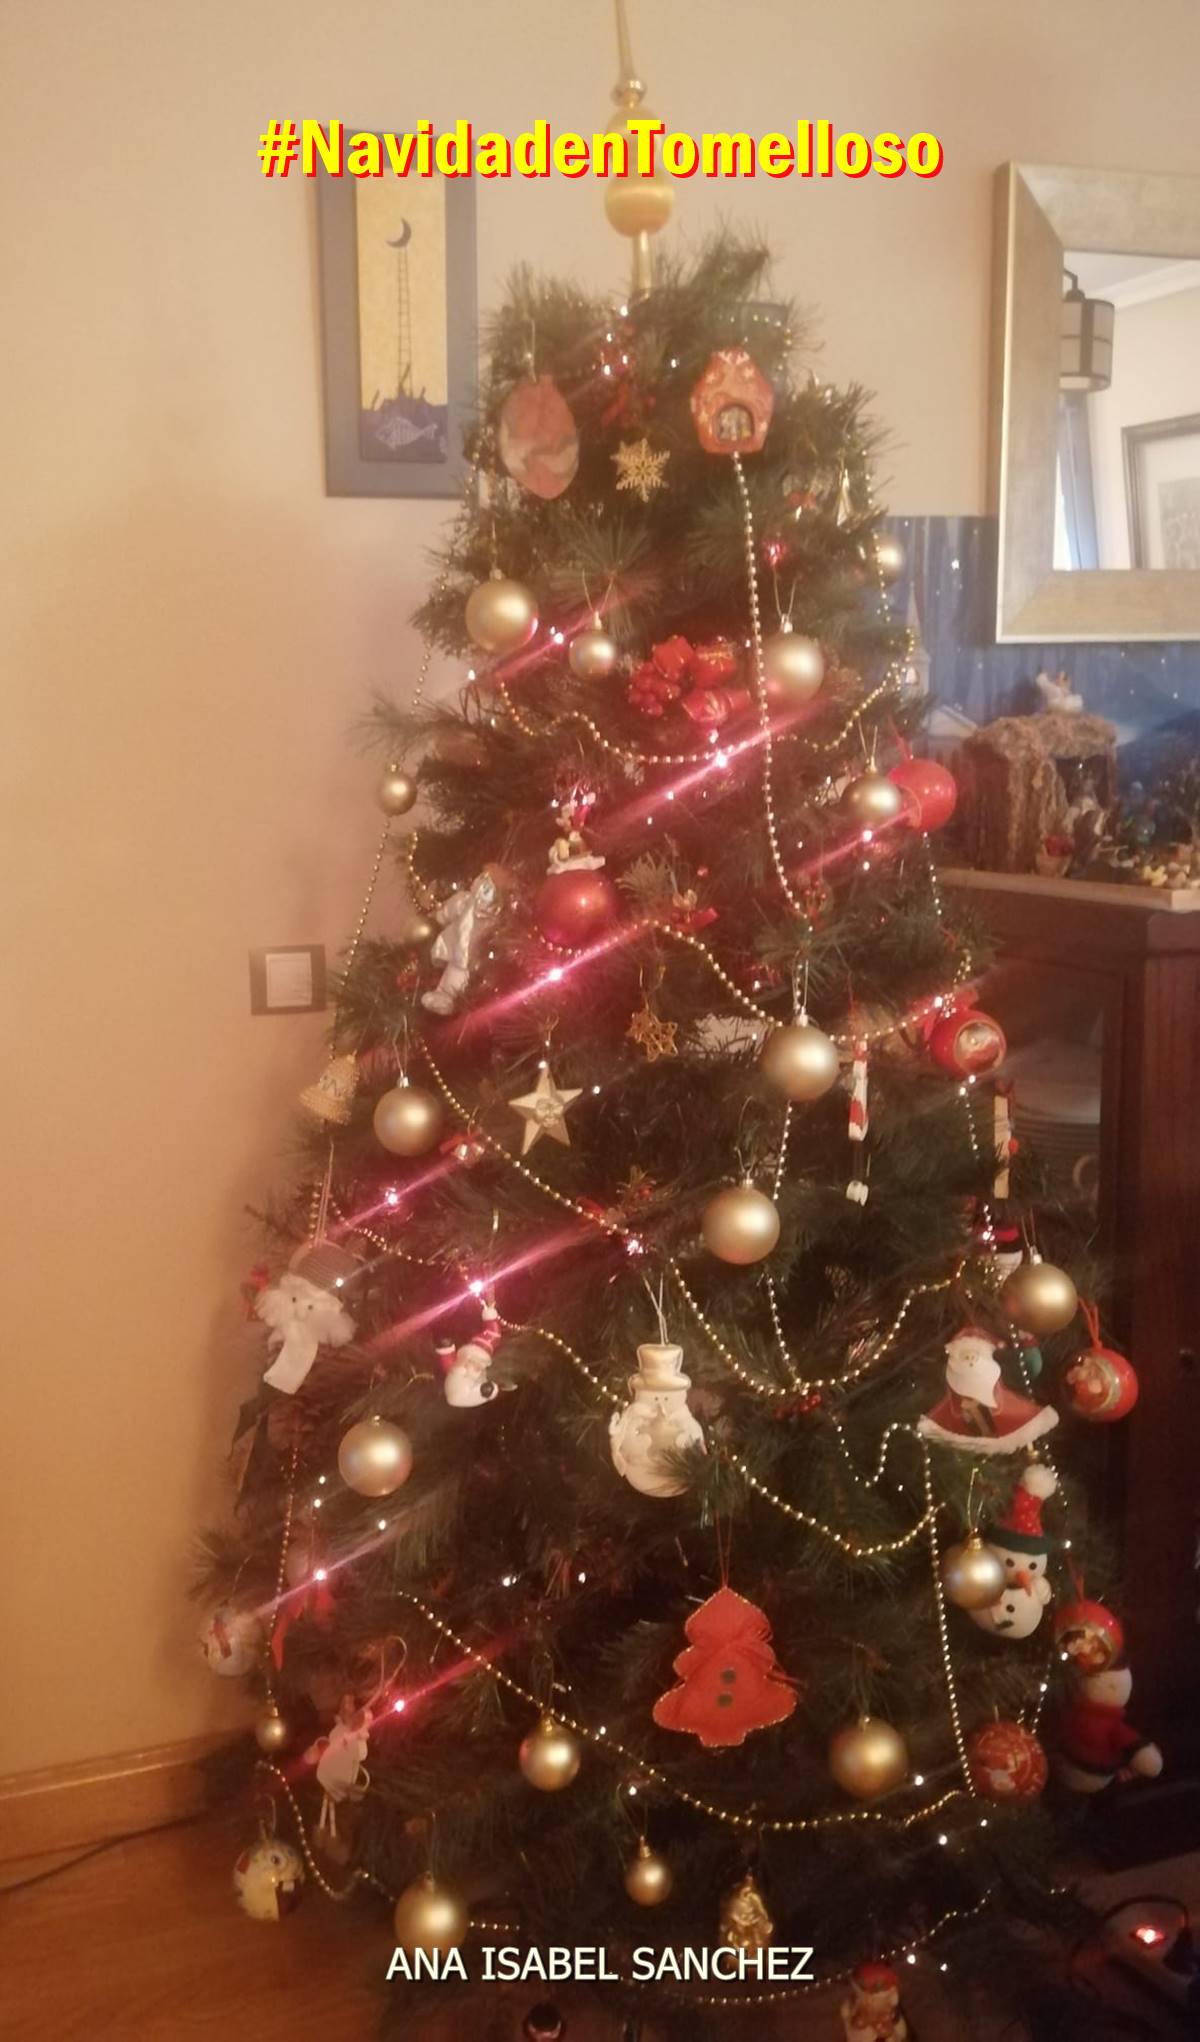 Los árboles de la Navidad 2020 de Tomelloso